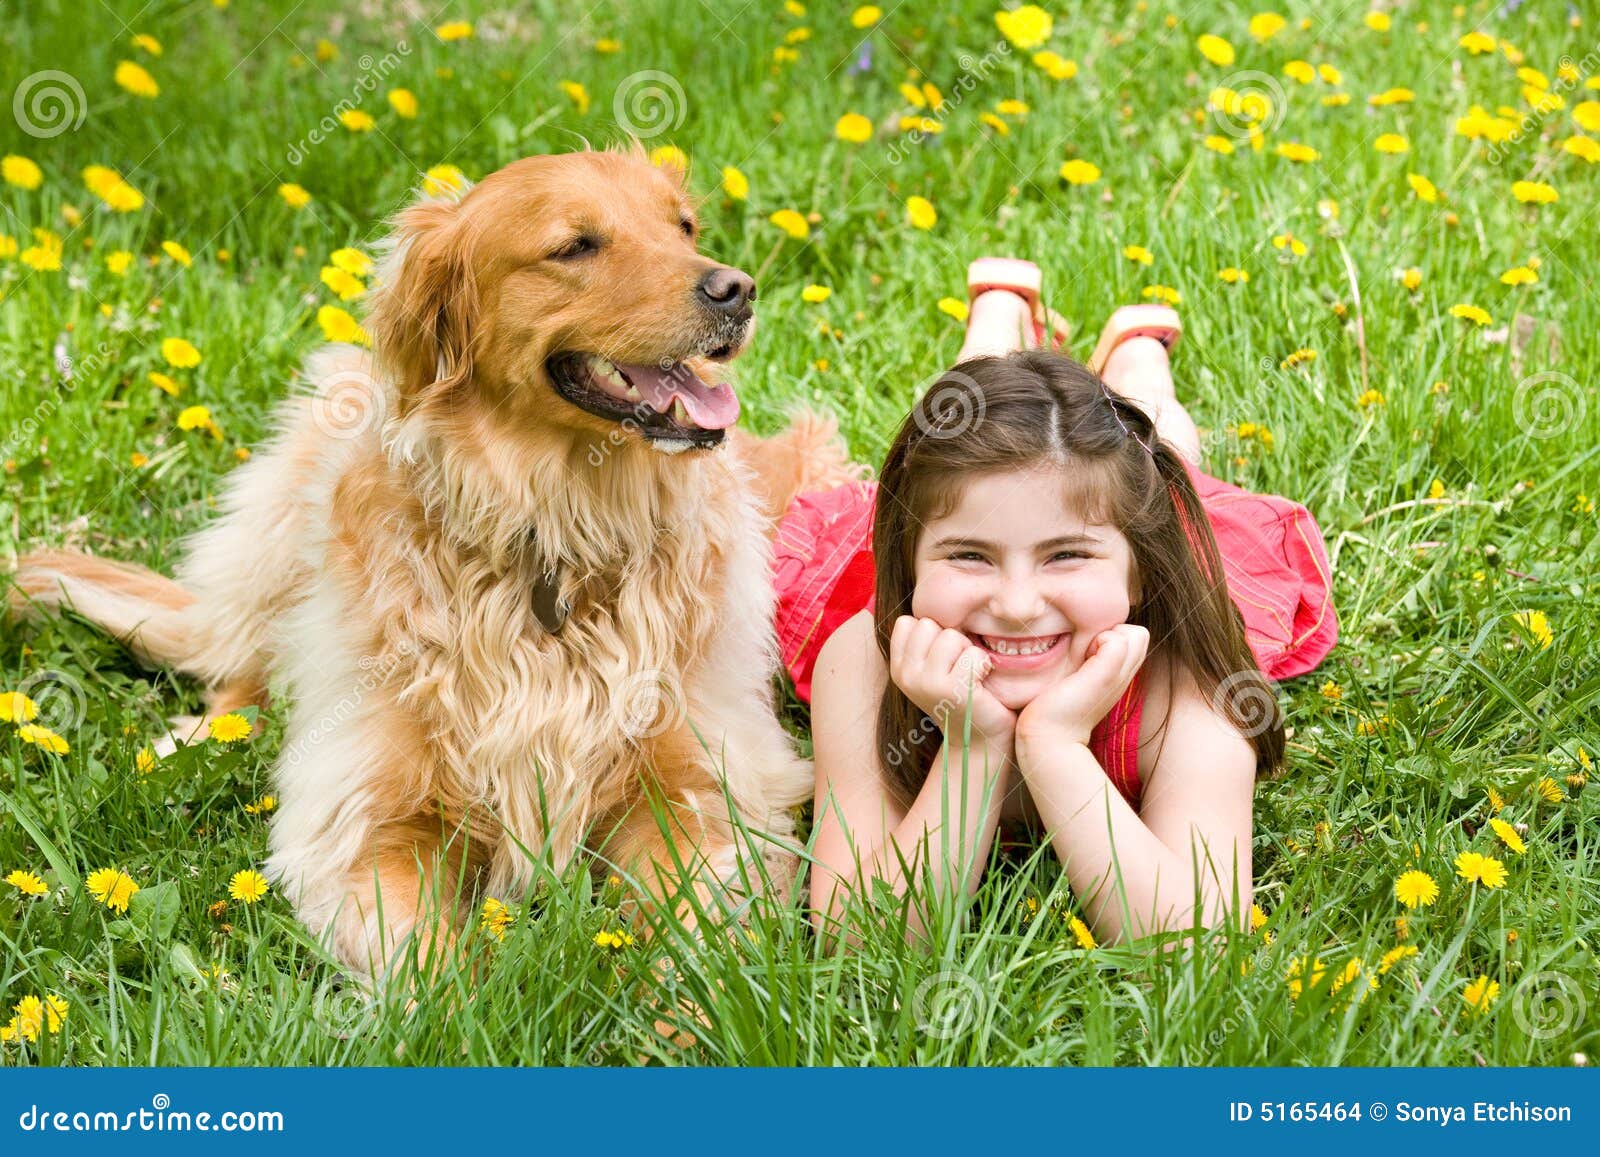 抱着狗狗的可爱小女孩43592_儿童专辑_人物类_图库壁纸_68Design